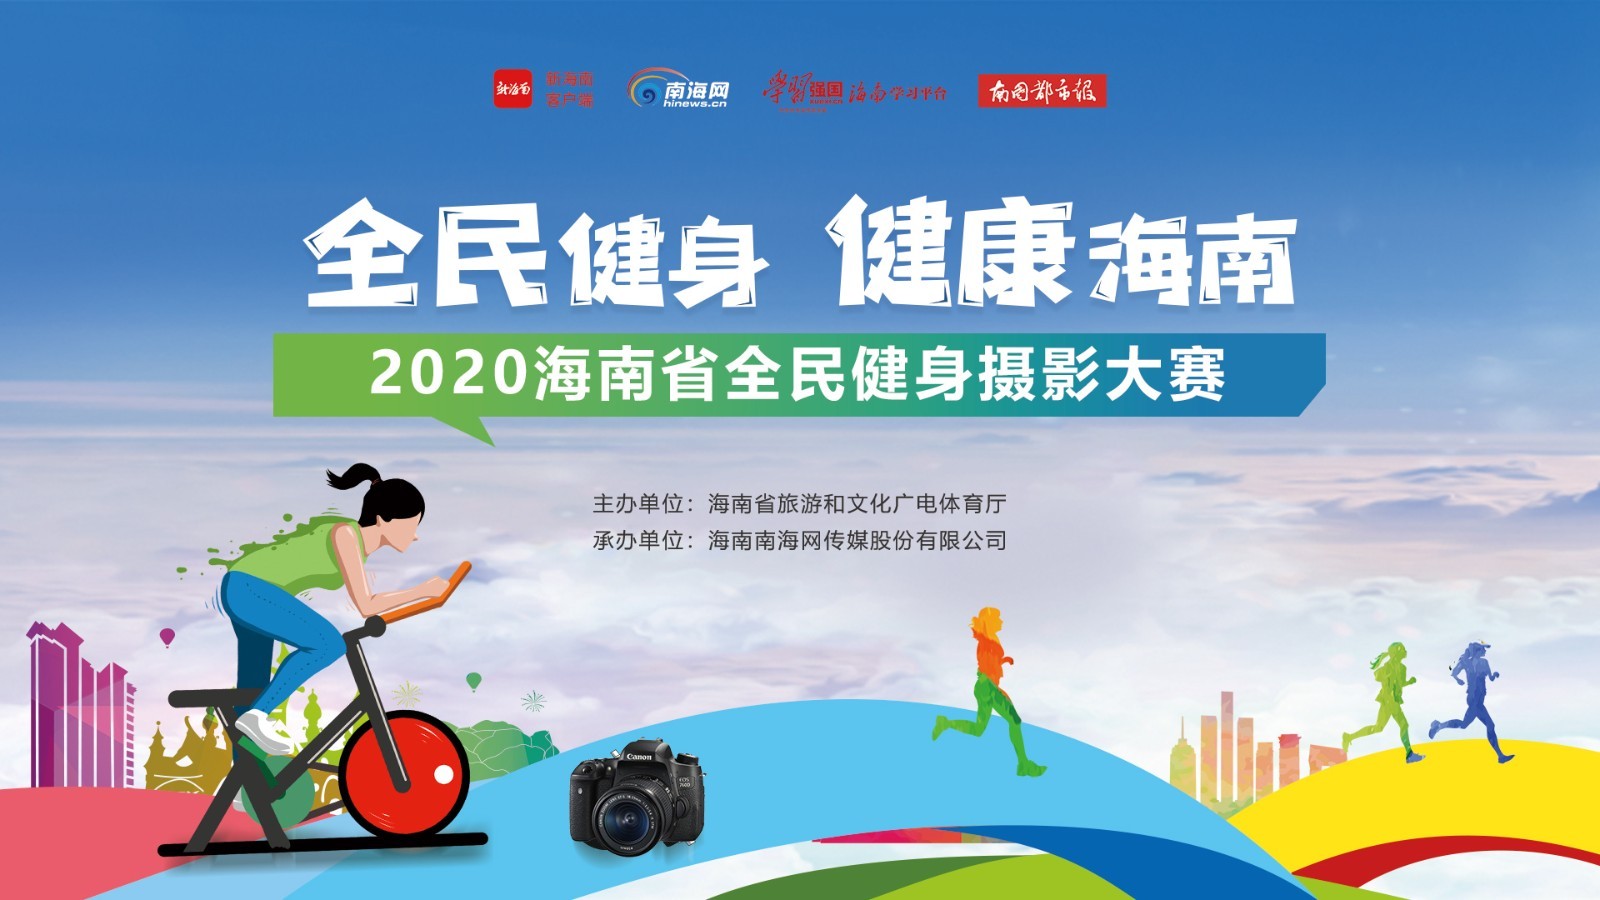 快来报名！2020海南省全民健身摄影大赛投稿即将截止